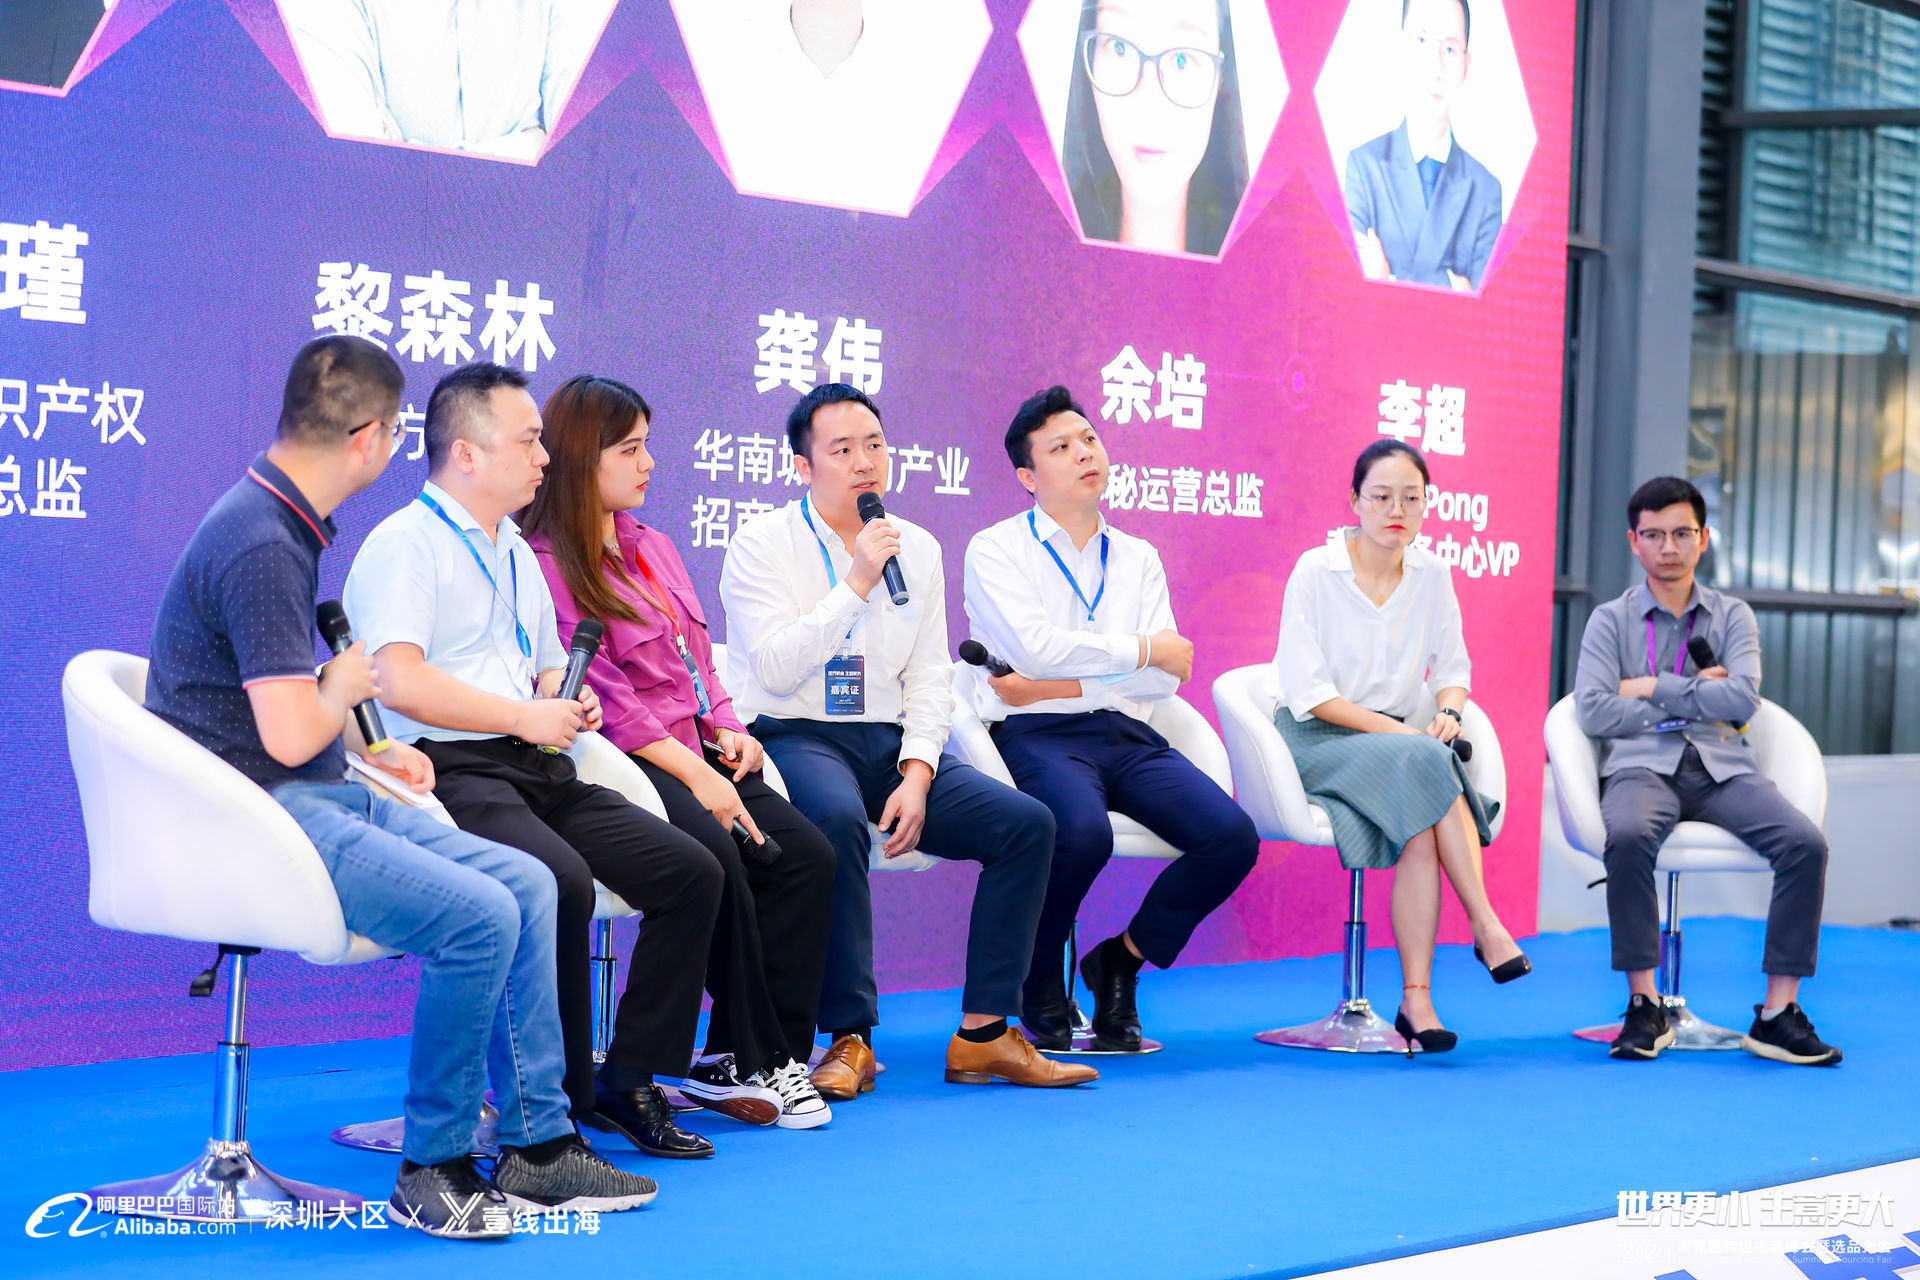 第五届中国(深圳)电子商务跨域合作与协同发展国际论坛